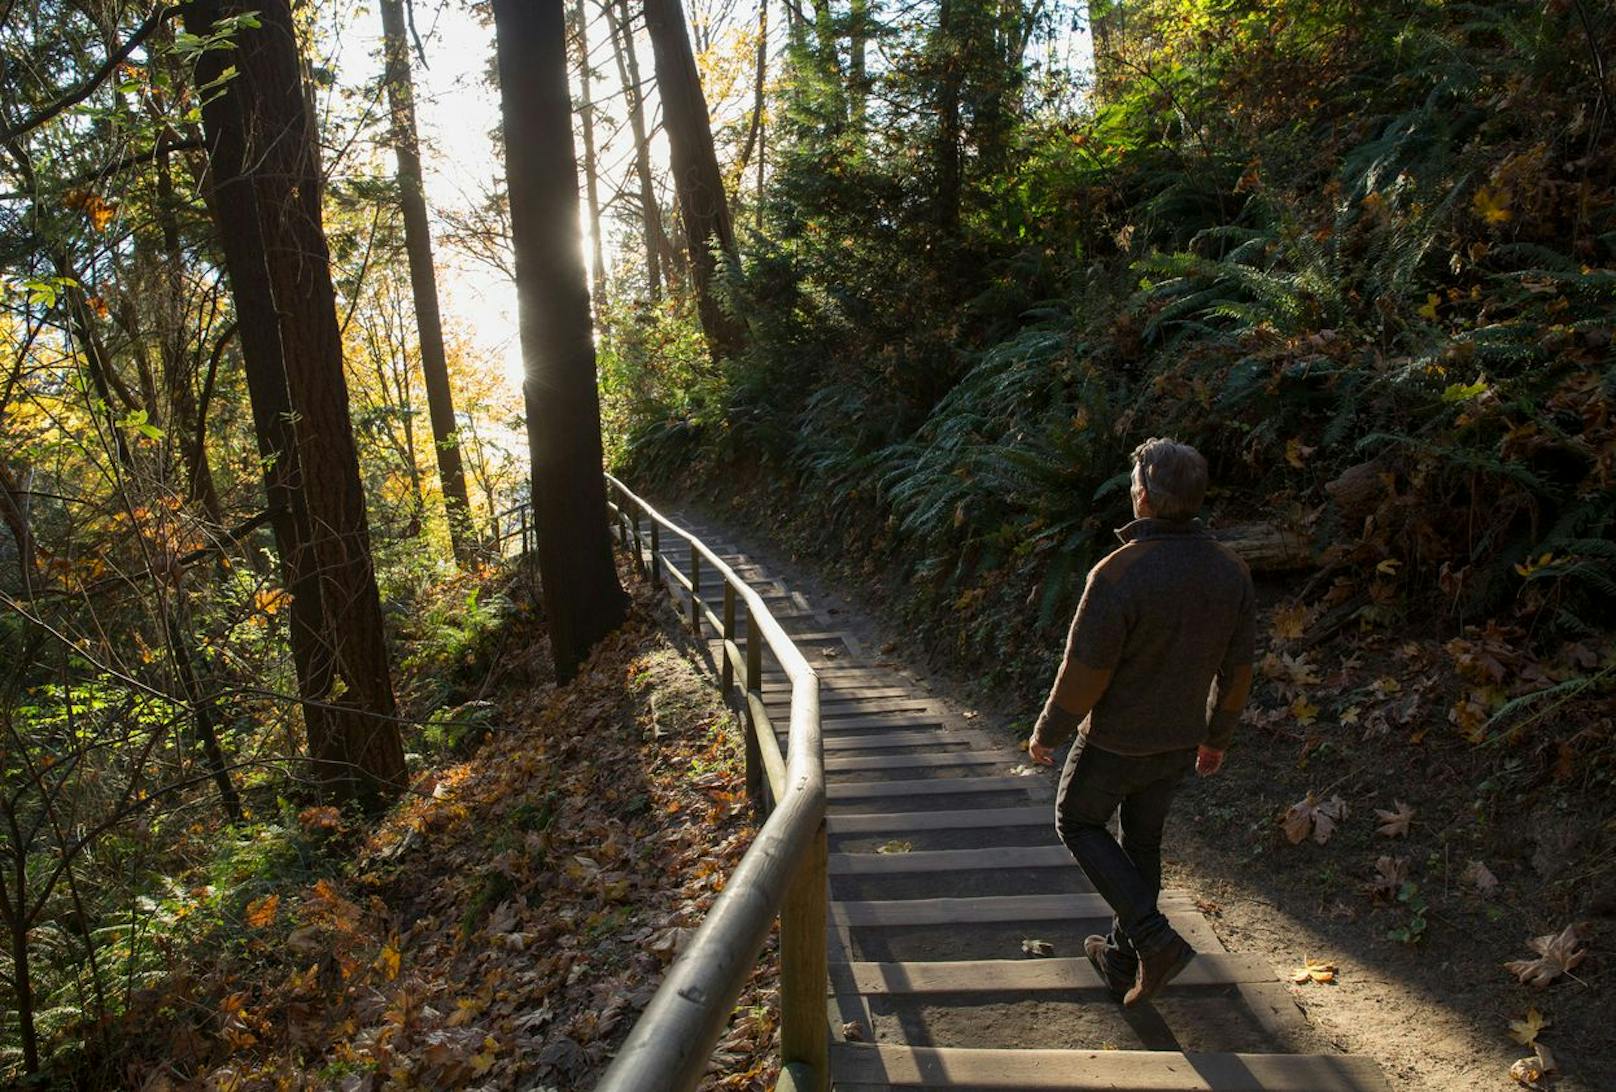 Sehen, riechen, spüren: Regelmäßige Spaziergänge im Wald&nbsp;sollen unser Hormon- und Nervensystem stärken und fitter machen als jedes Workout.&nbsp;